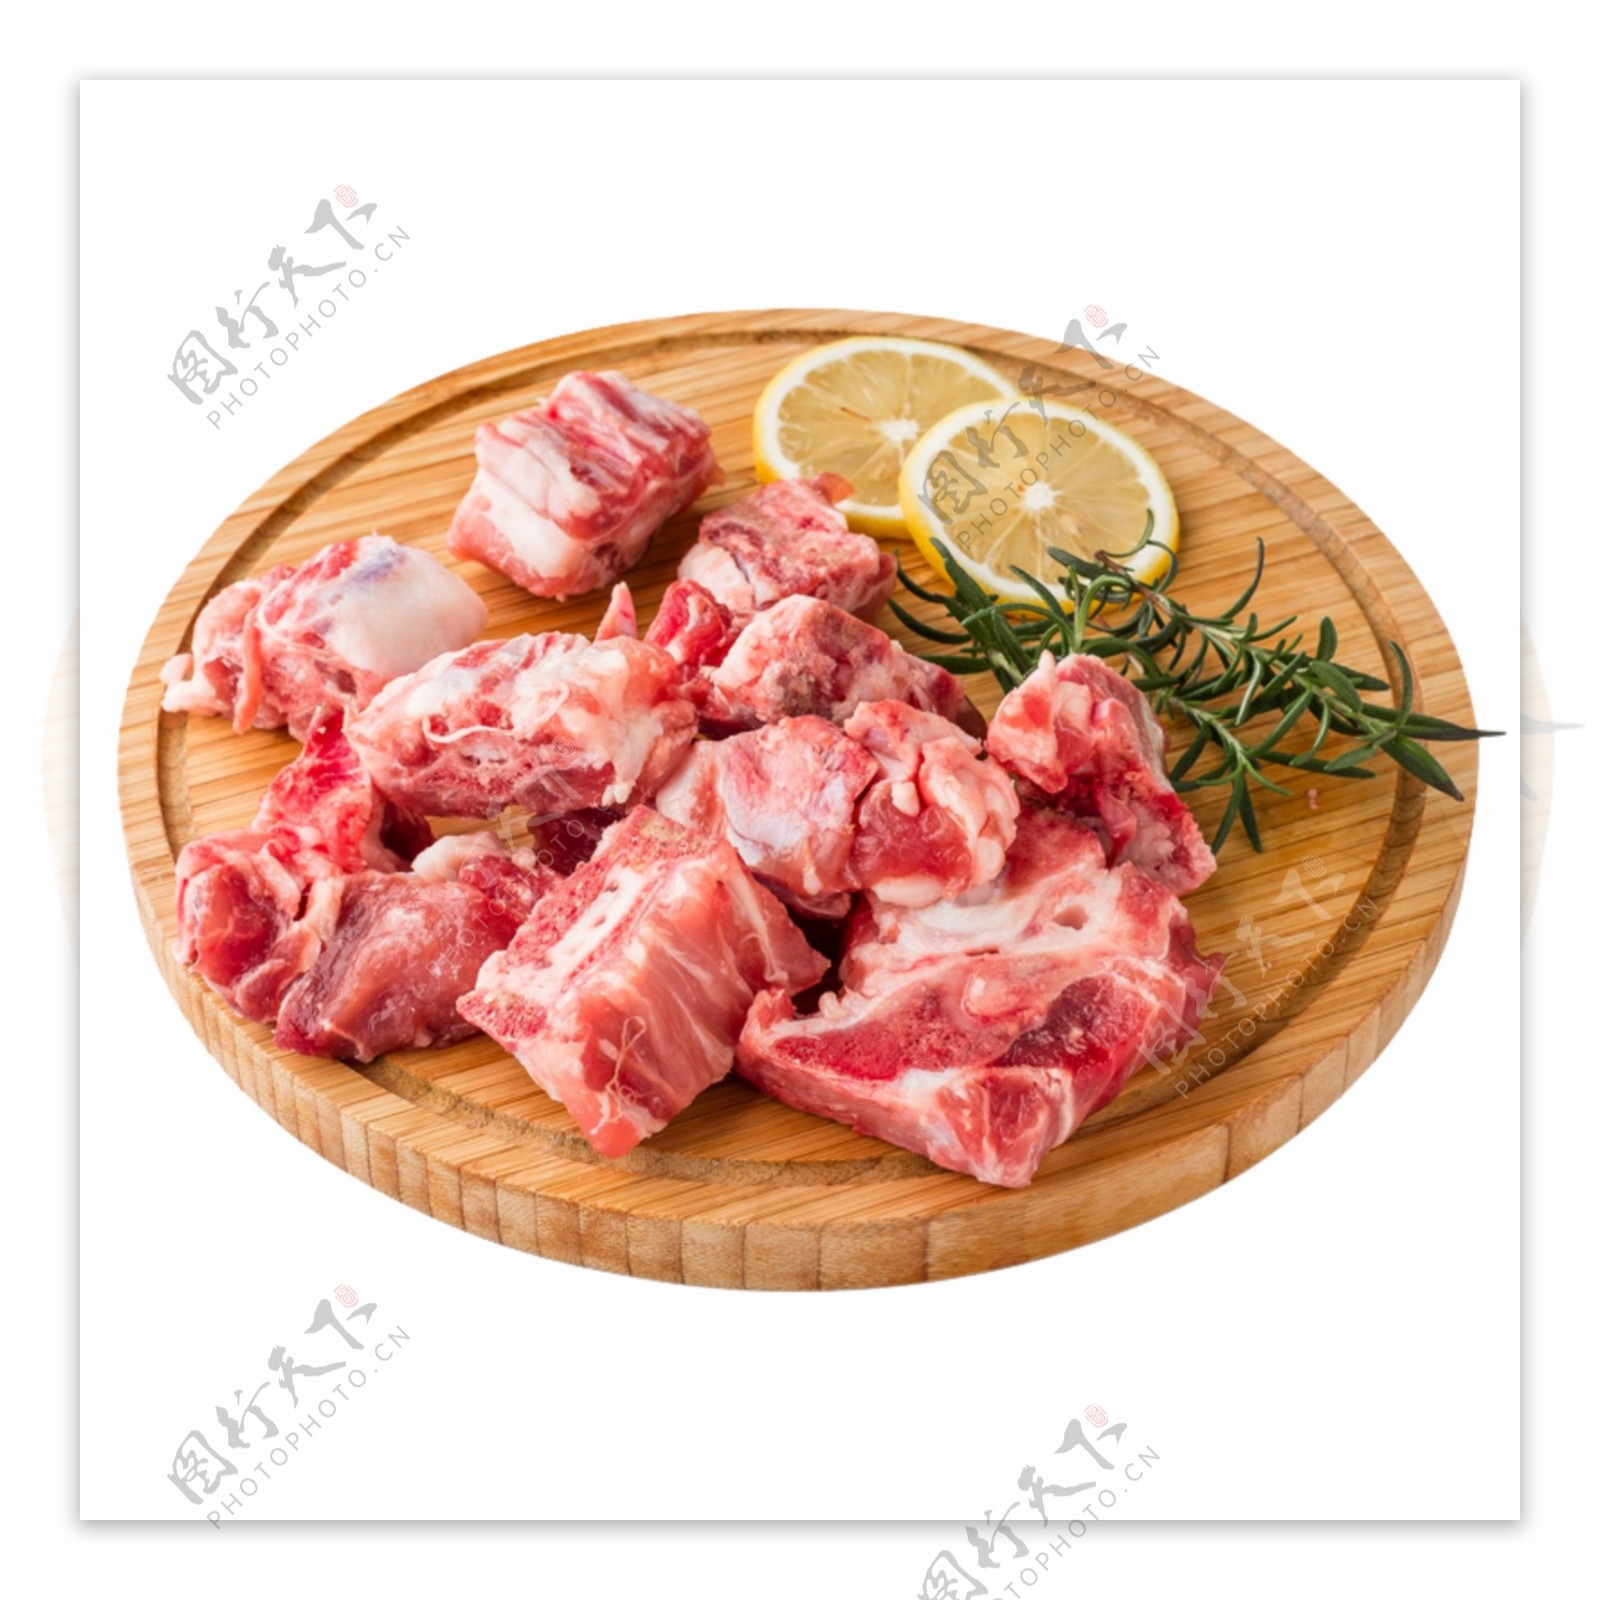 排骨厨房餐具食物猪肉案板素材美味蔬菜餐饮